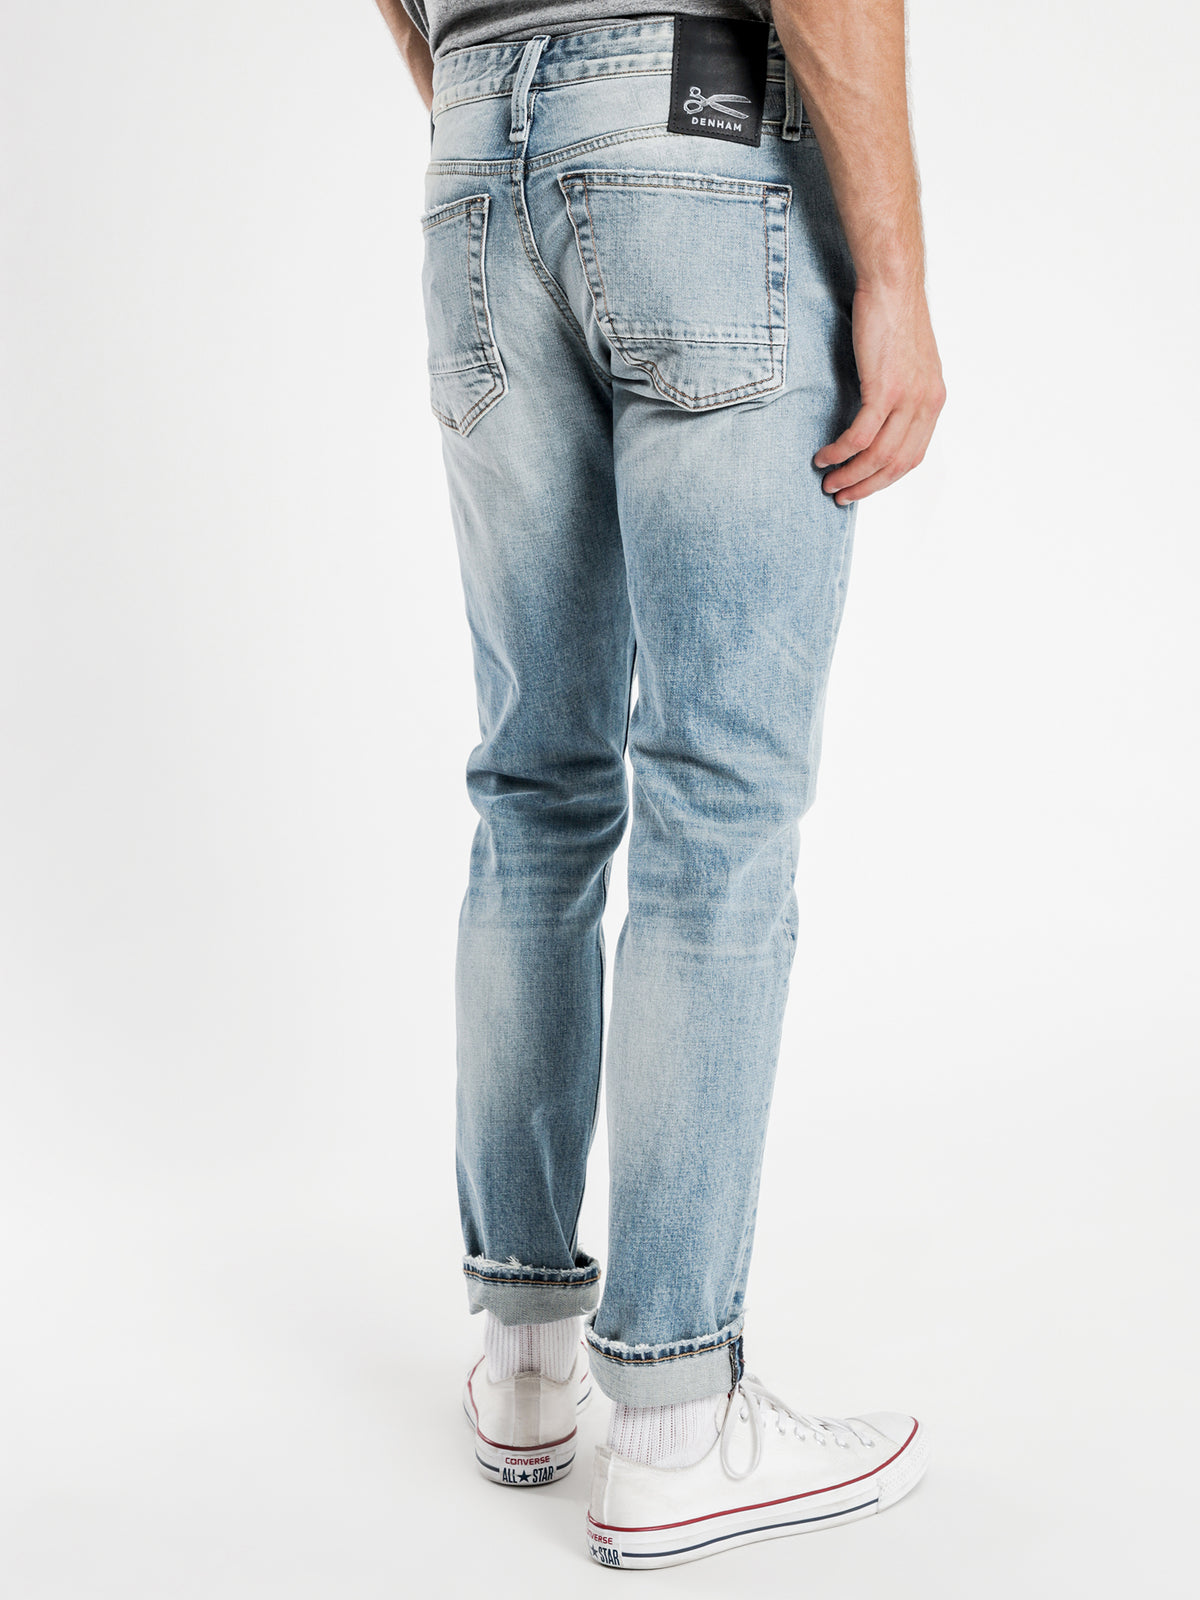 Razor AVBL Slim Jeans in Light Blue Wash Denim